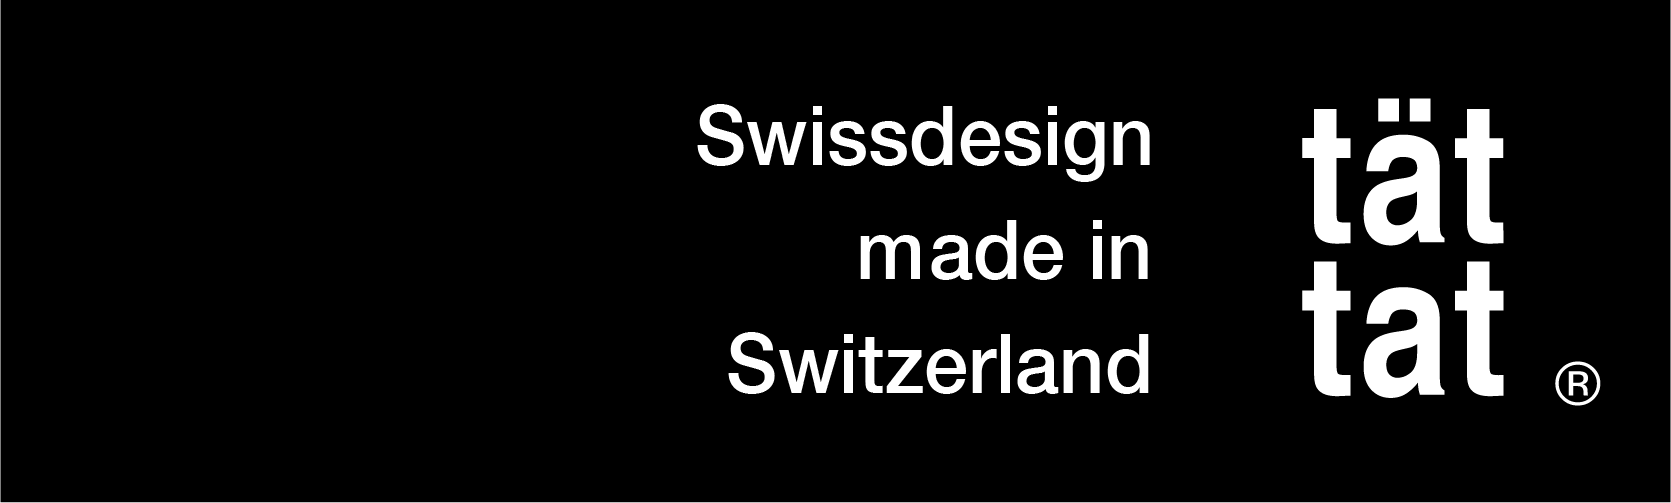 Logo der tät-tat GmbH mit Slogan 'Swissdesign made in Switzerland'